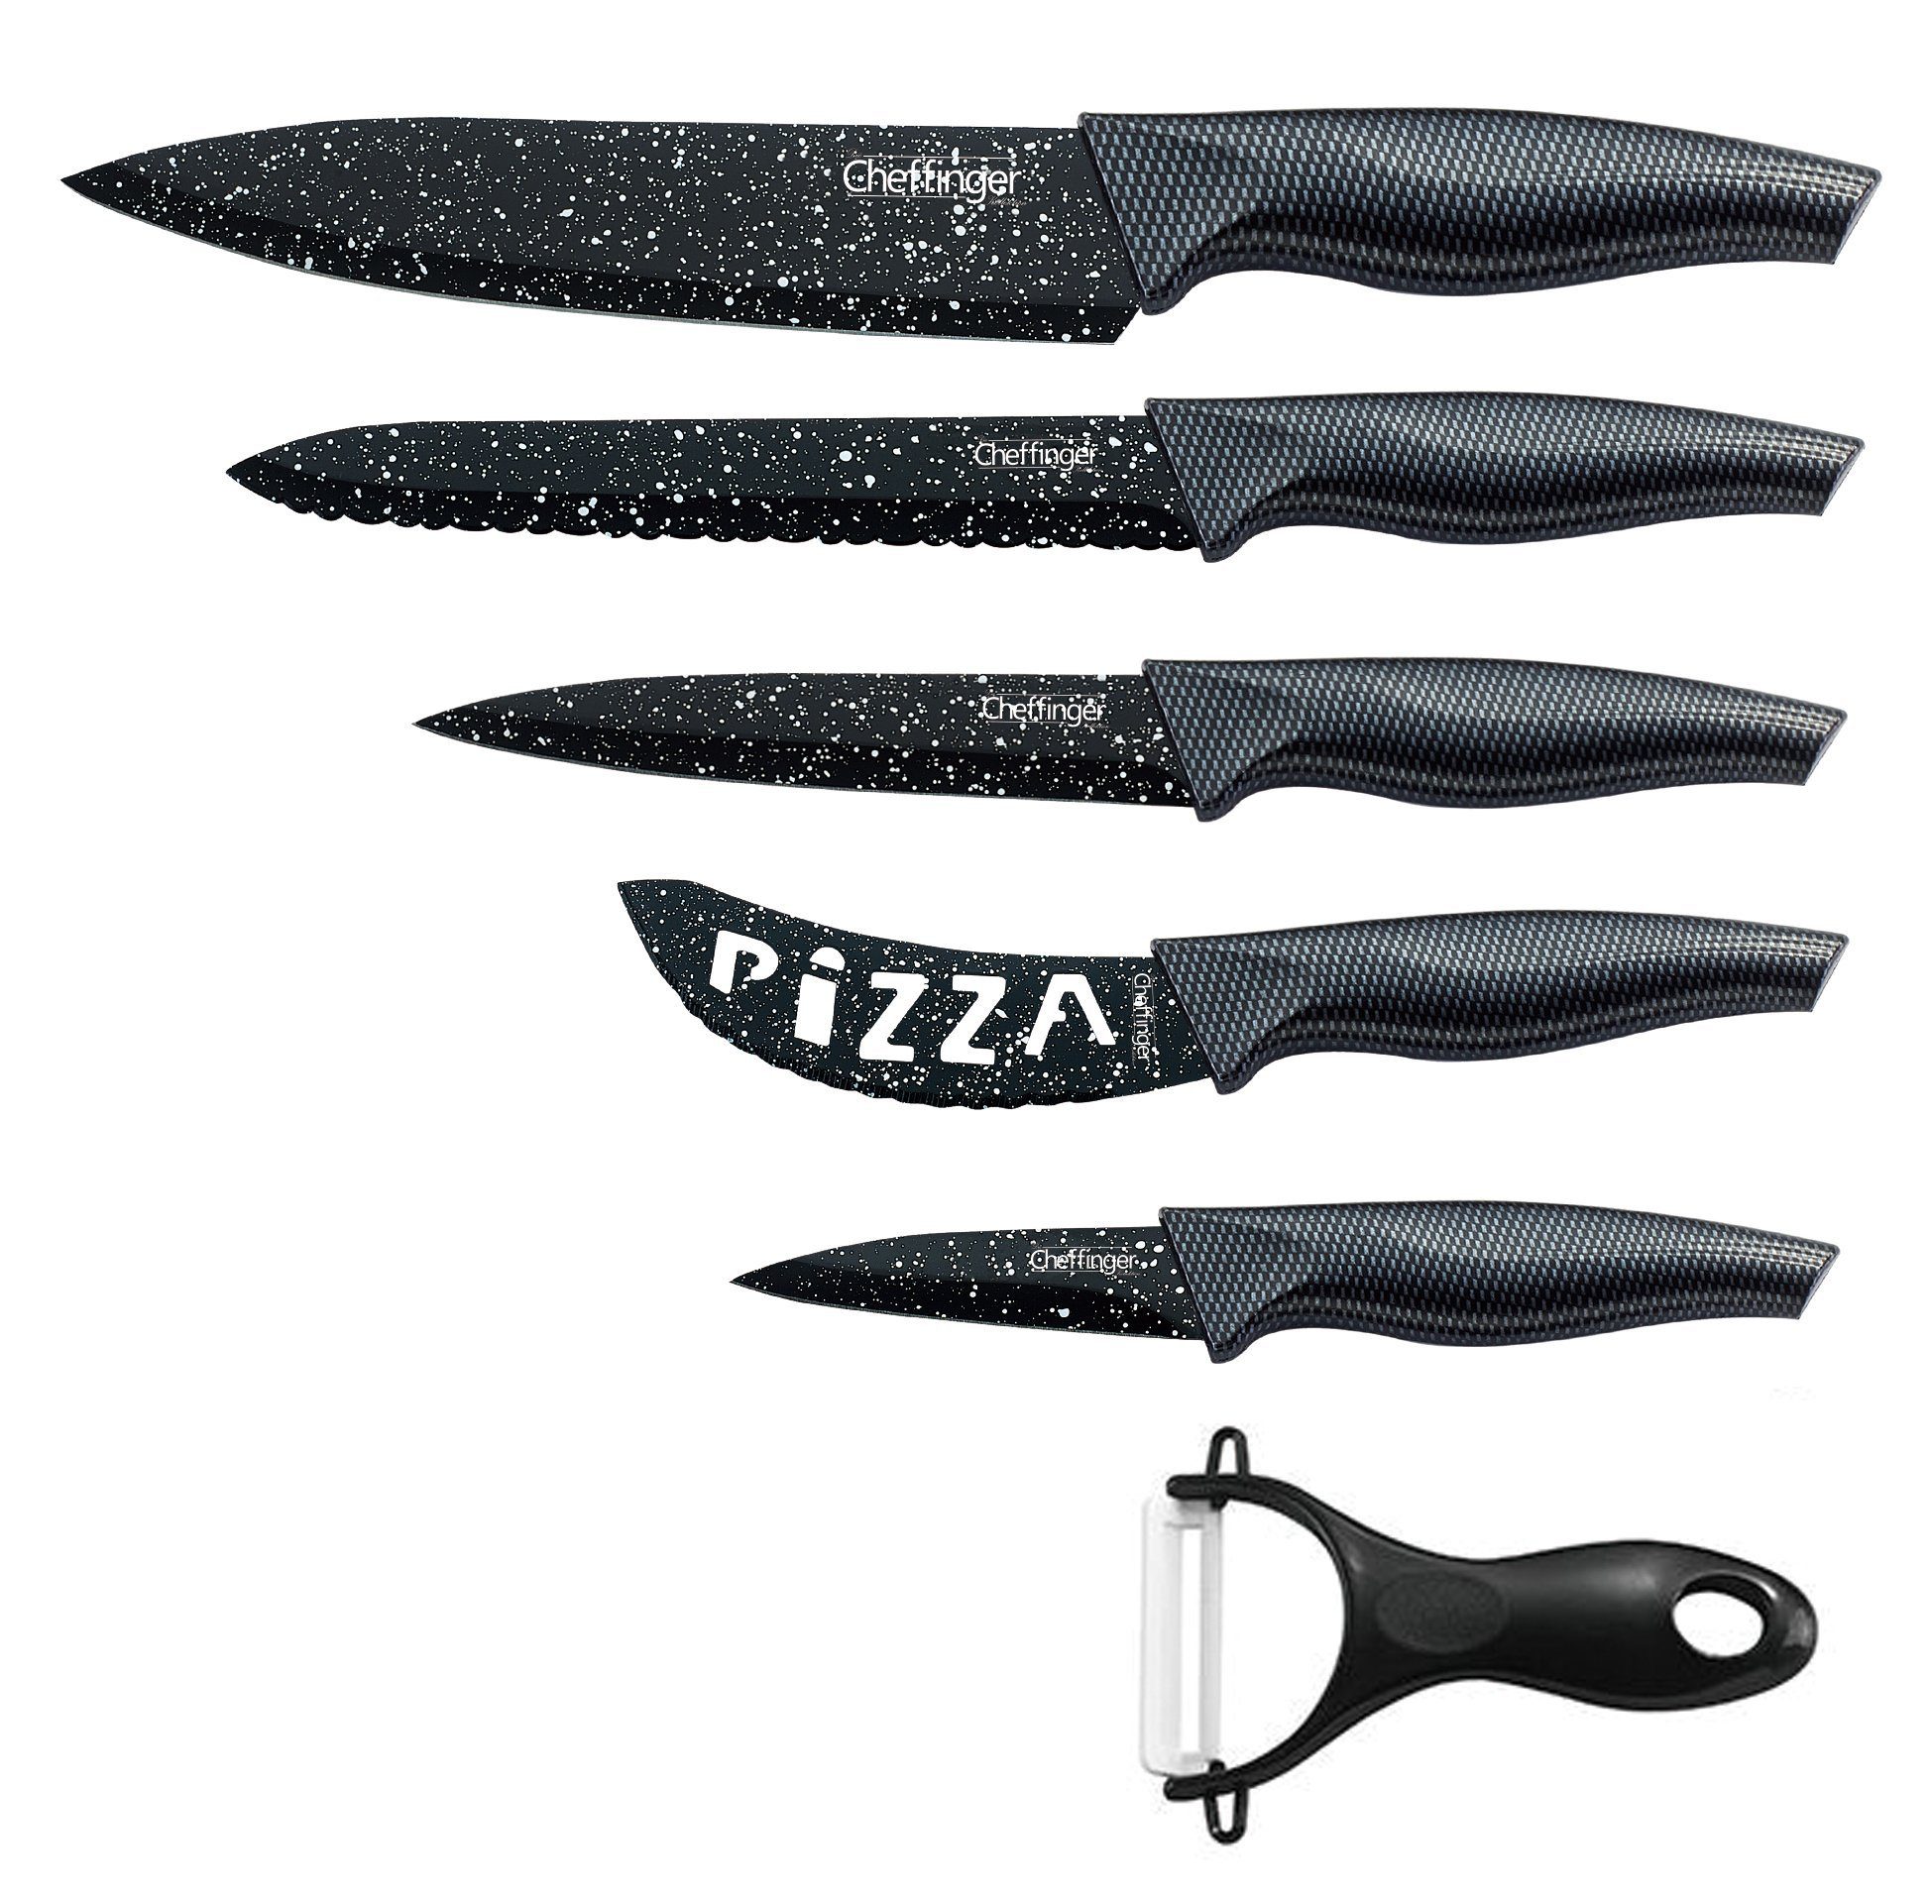 Cheffinger Messer-Set 6 teiliges Messerset (5 Messer & 1 Sparschäler) in Klappbox mit Magnetverschluss scharfe Messerklingen Küchenmesser Chefmesser Pizzamesser schwarz/weiß